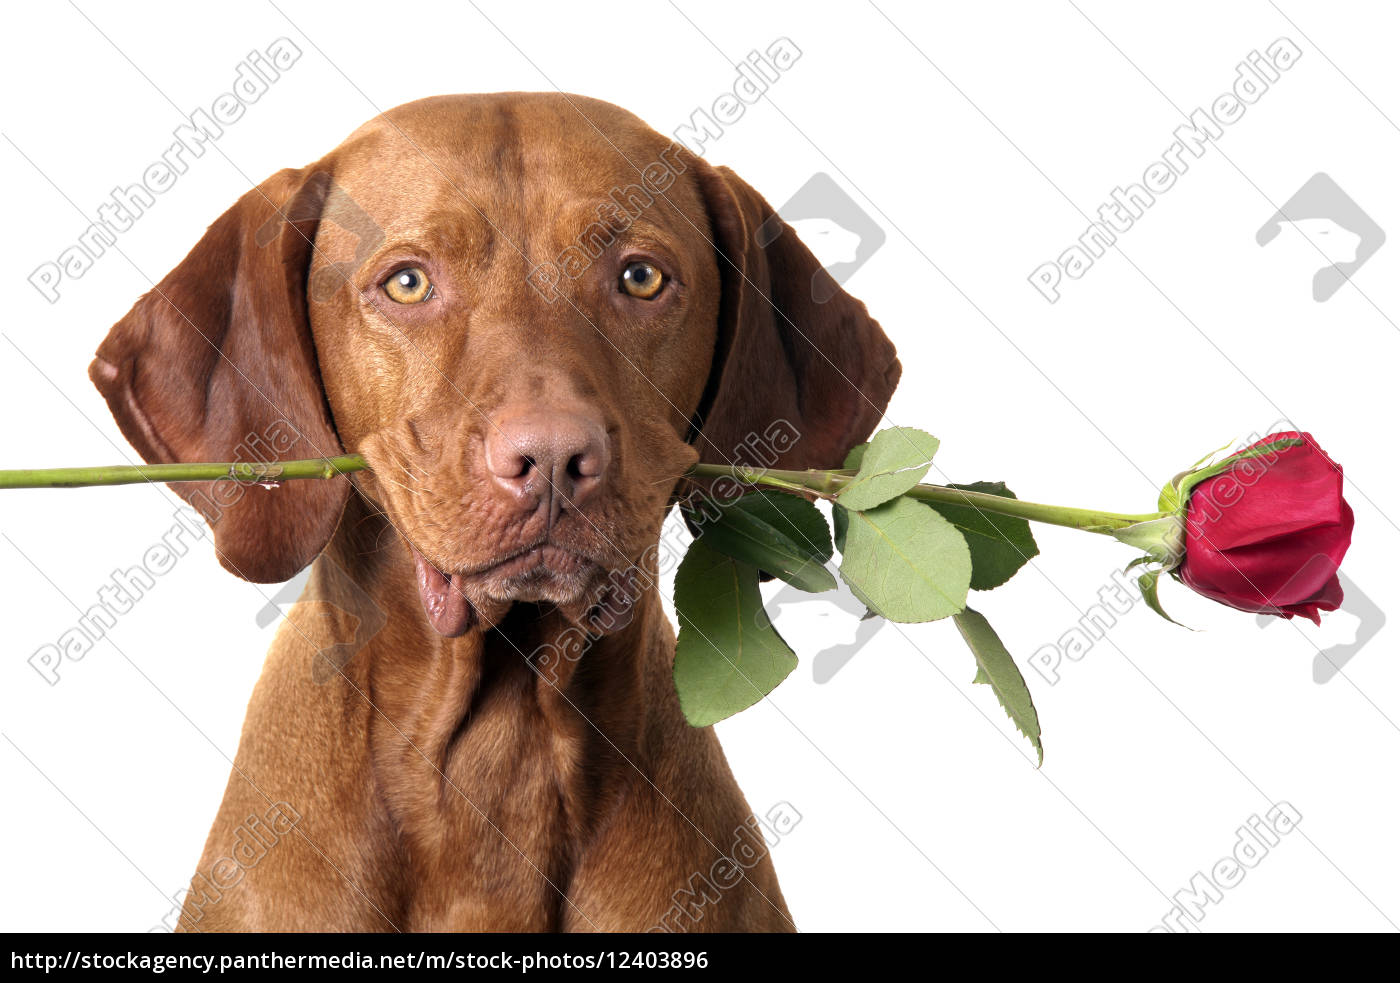 hund mit rose im mund Lizenzfreies Foto 12403896 Bildagentur